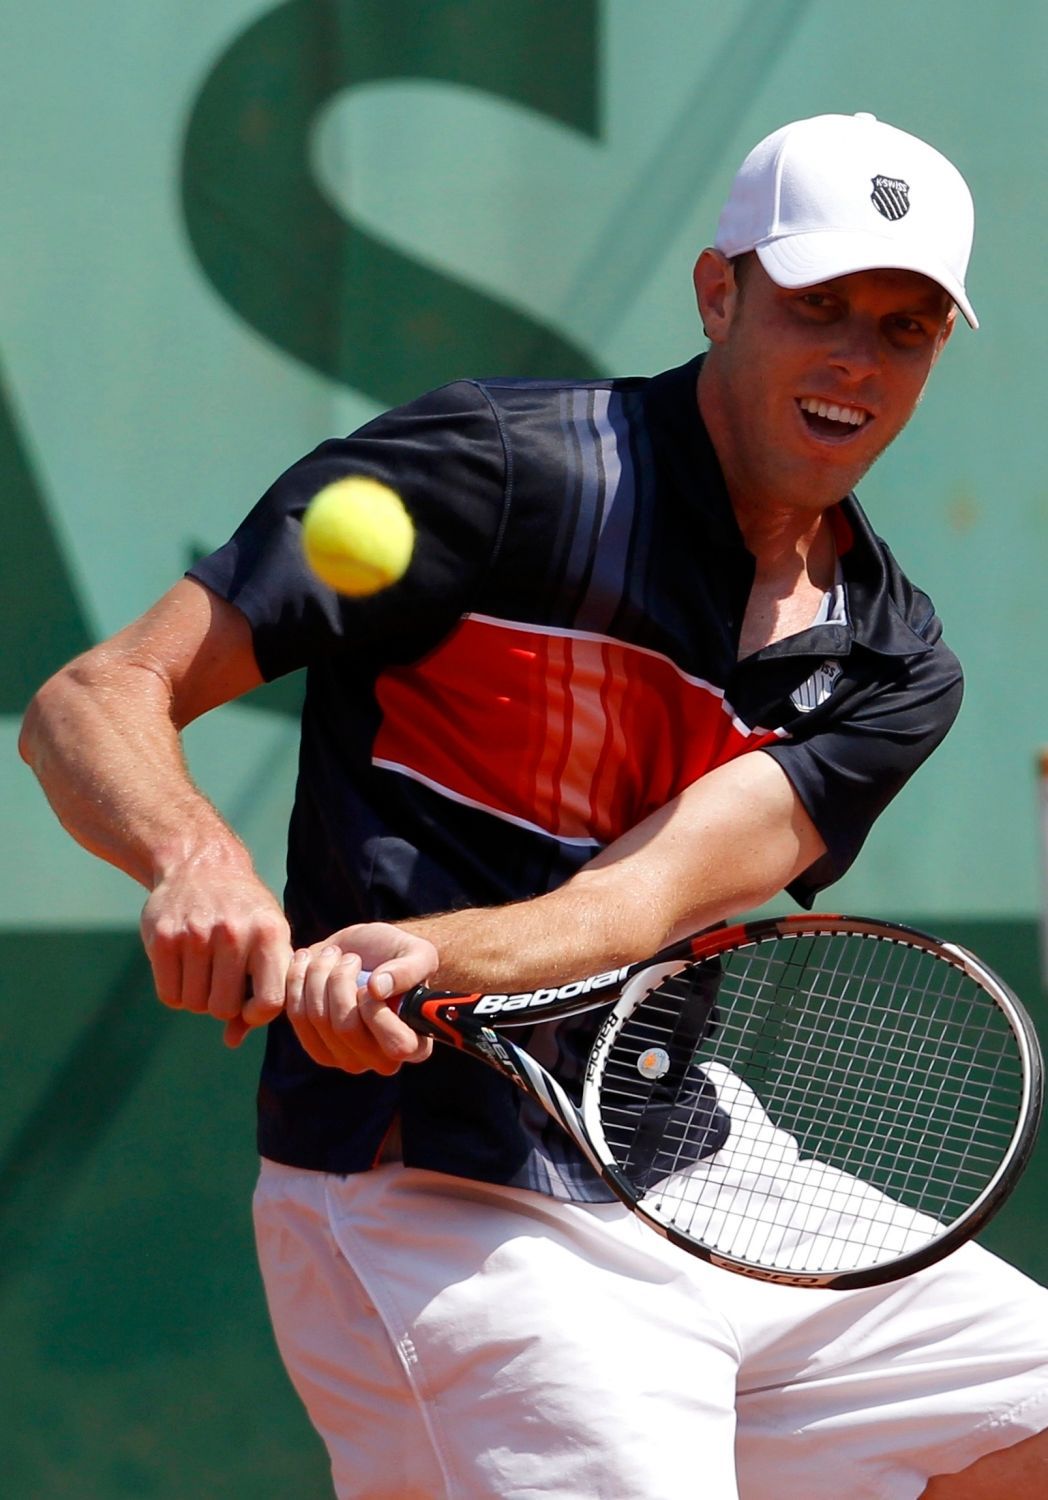 Američan Sam Querrey vrací míček Srbovi Janko Tipsarevičovi během French Open 2012